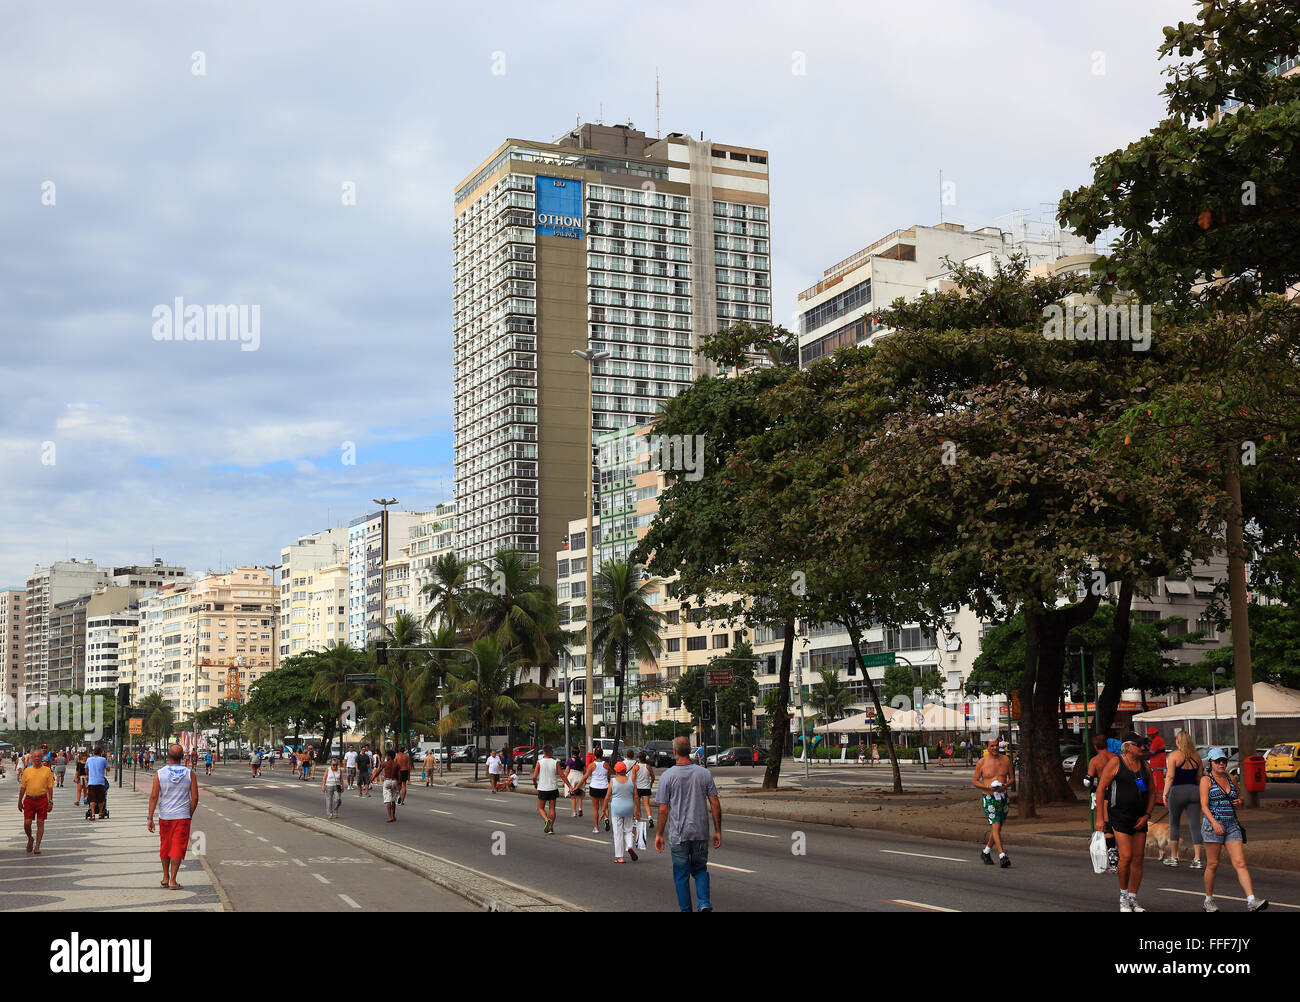 The street Avenida Atlantica at the Copacobana, Rio de Janeiro, Brazil Stock Photo